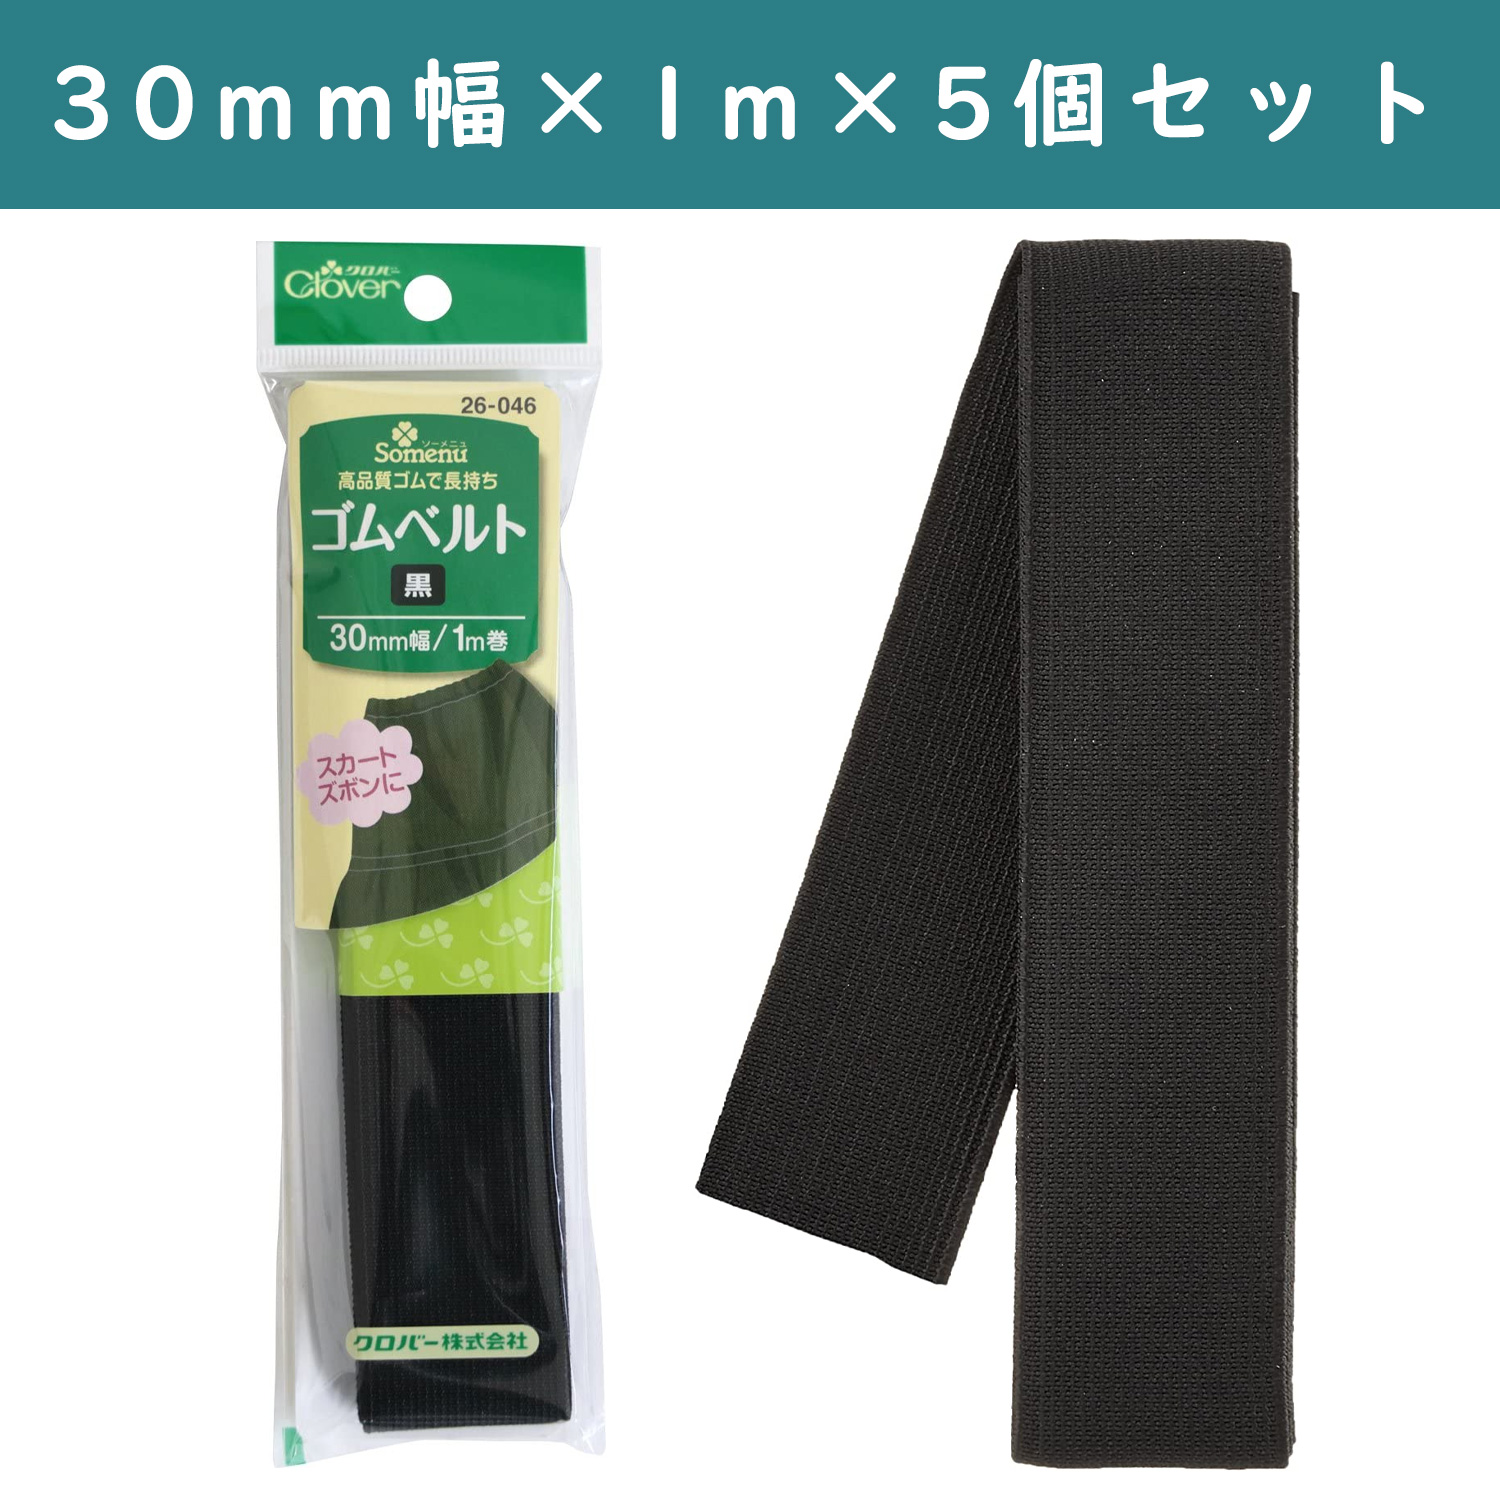 □【5個】CL26-046-5set ゴムベルト 30mm幅 黒 ×5個 (セット) / NIPPON